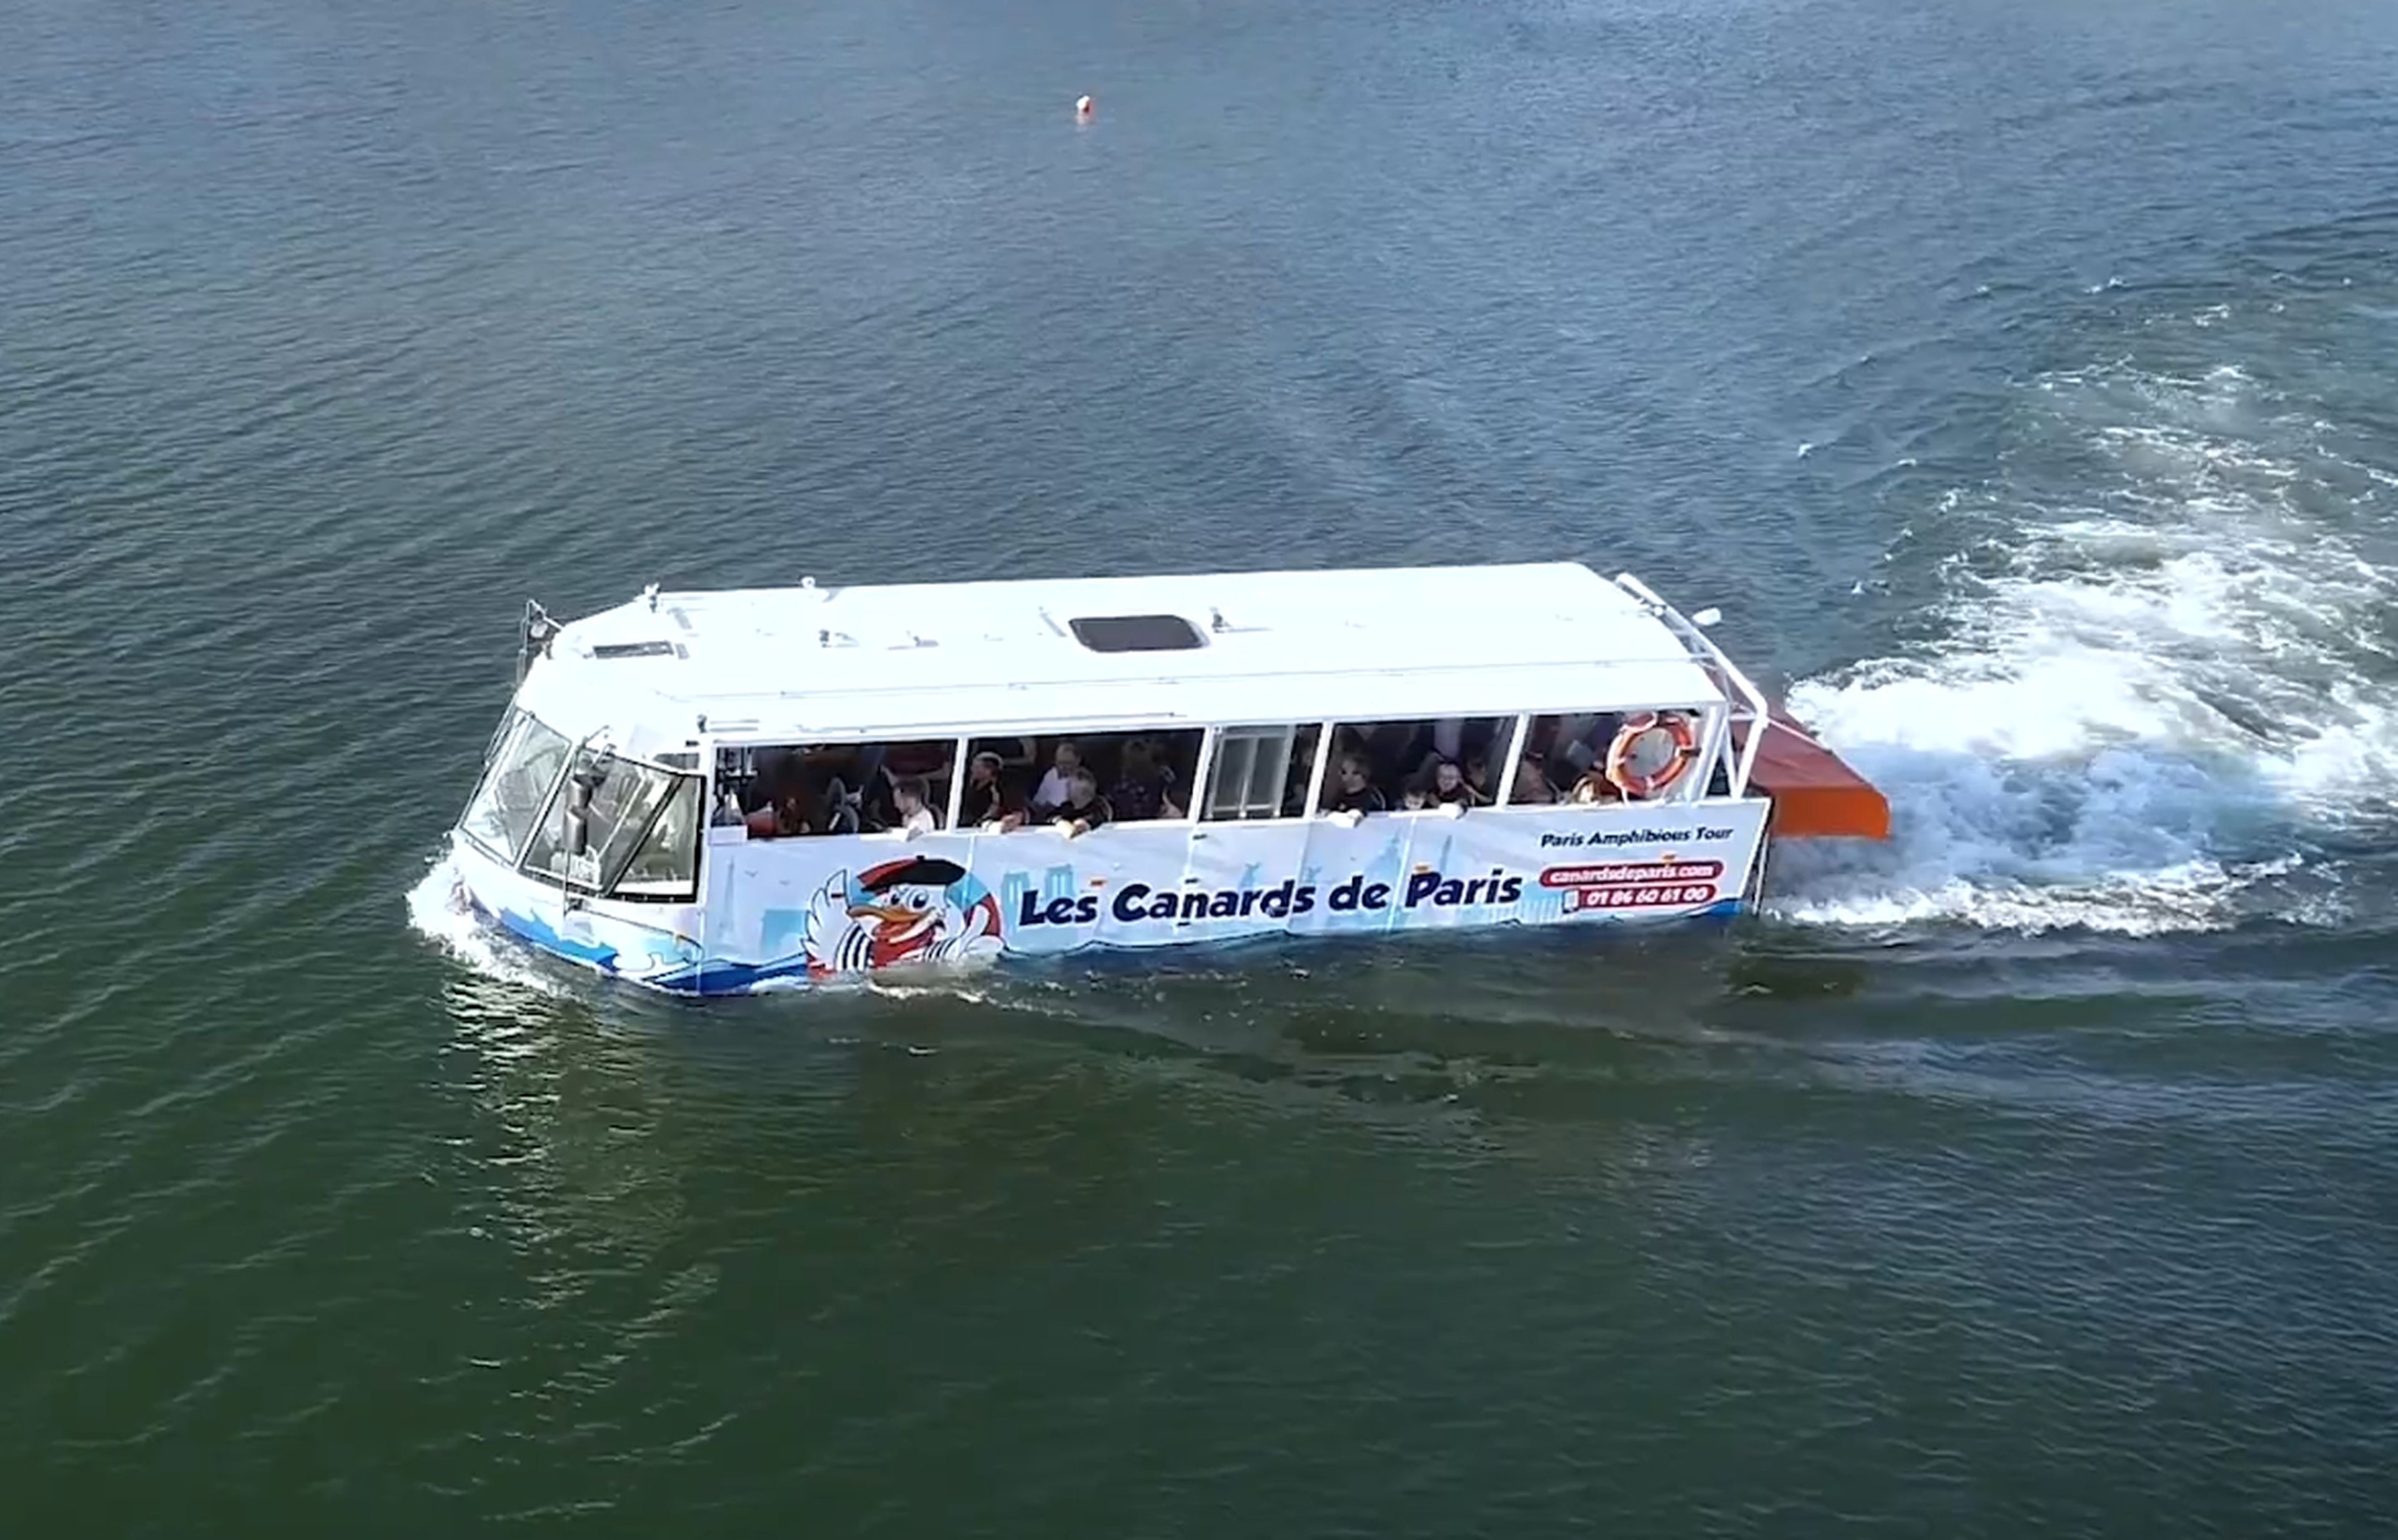 El primer autobús turístico anfibio está en París